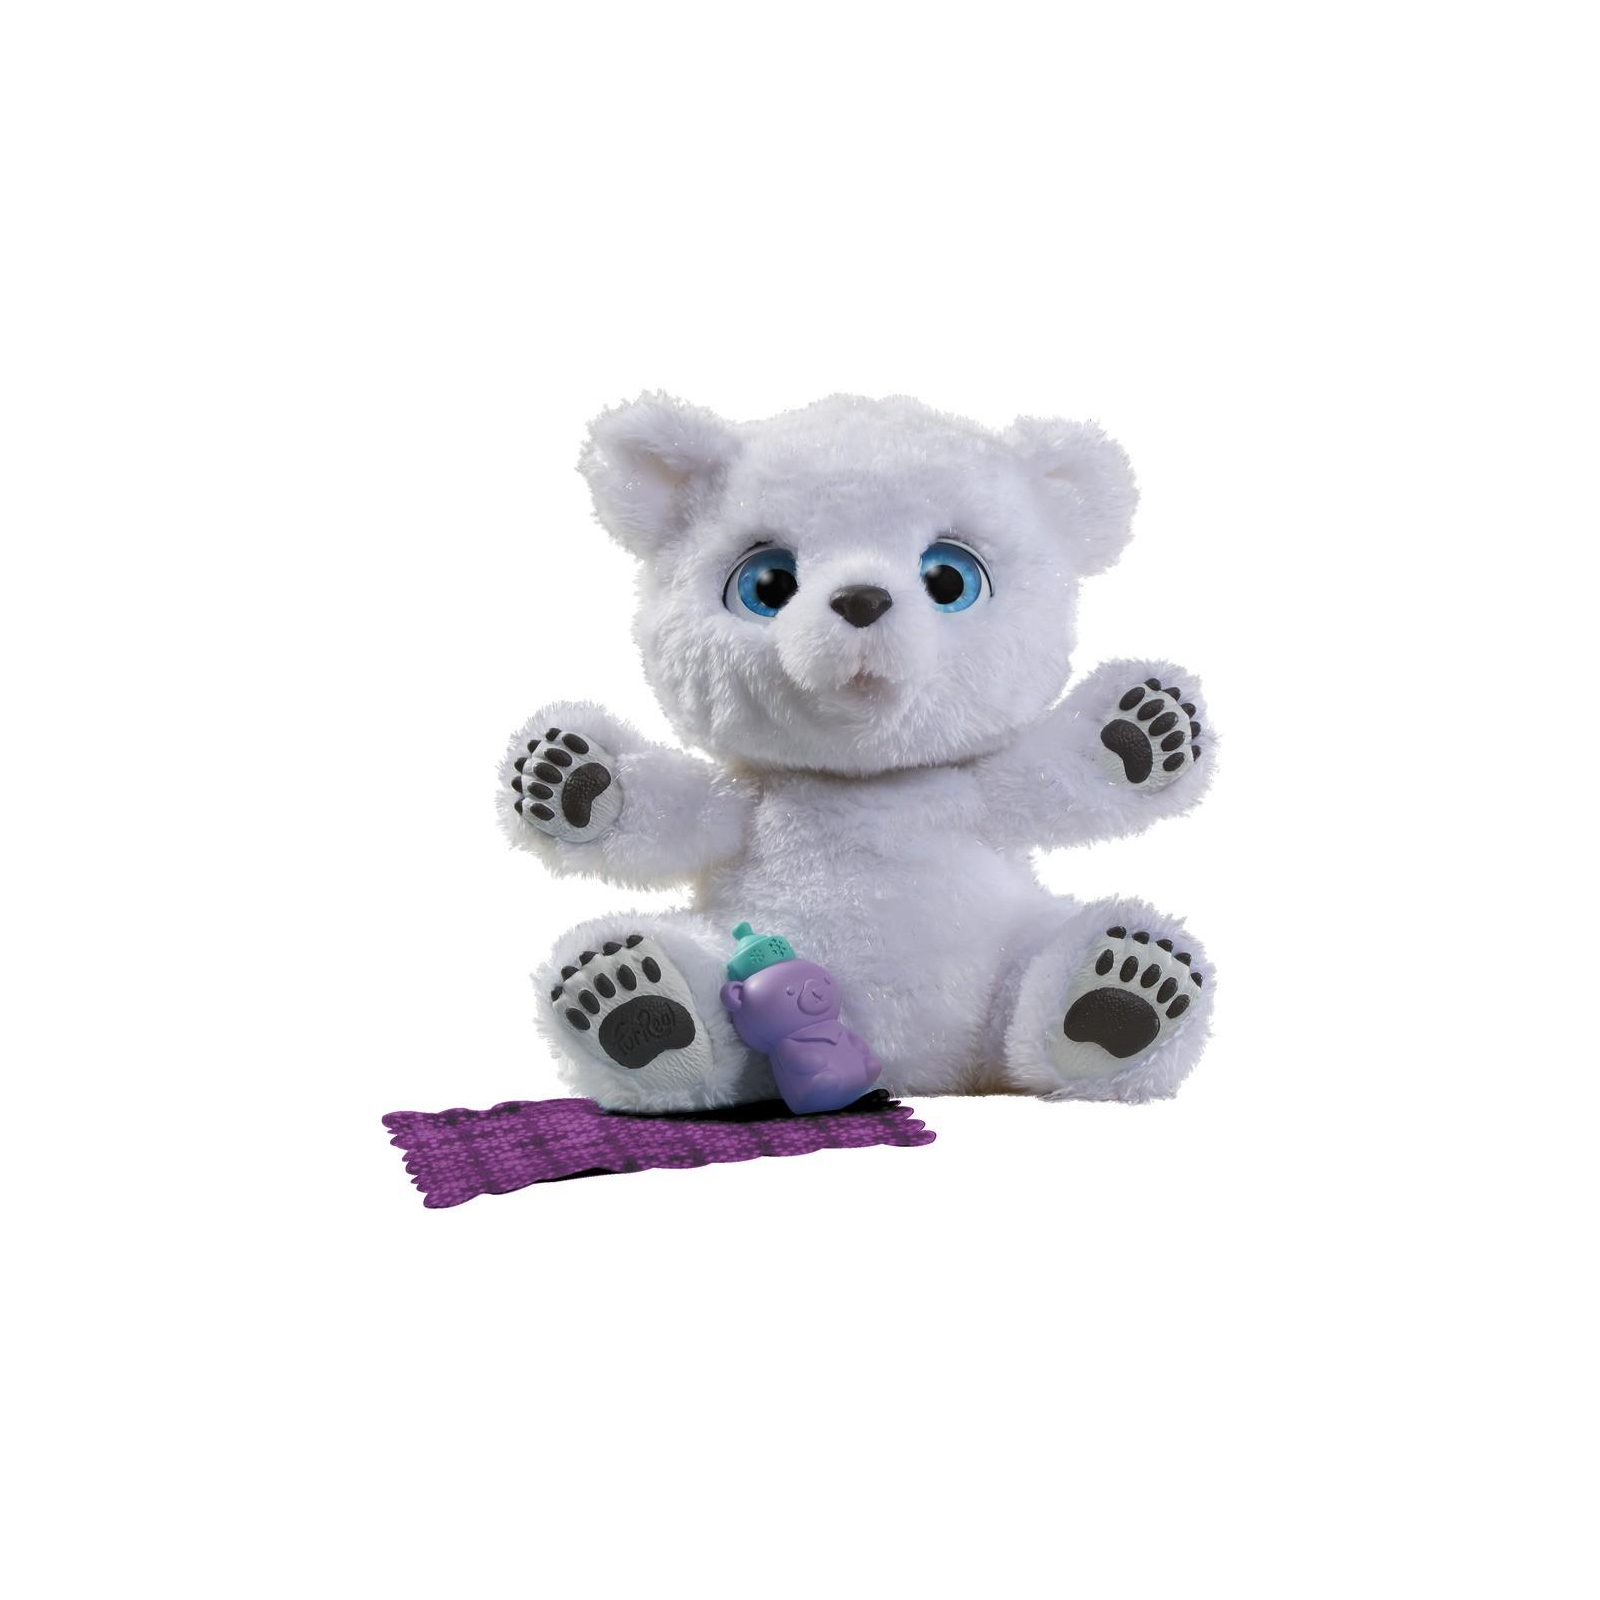 Інтерактивна іграшка Hasbro Furreal Friends Полярный Медвежонок (B9073) зображення 2